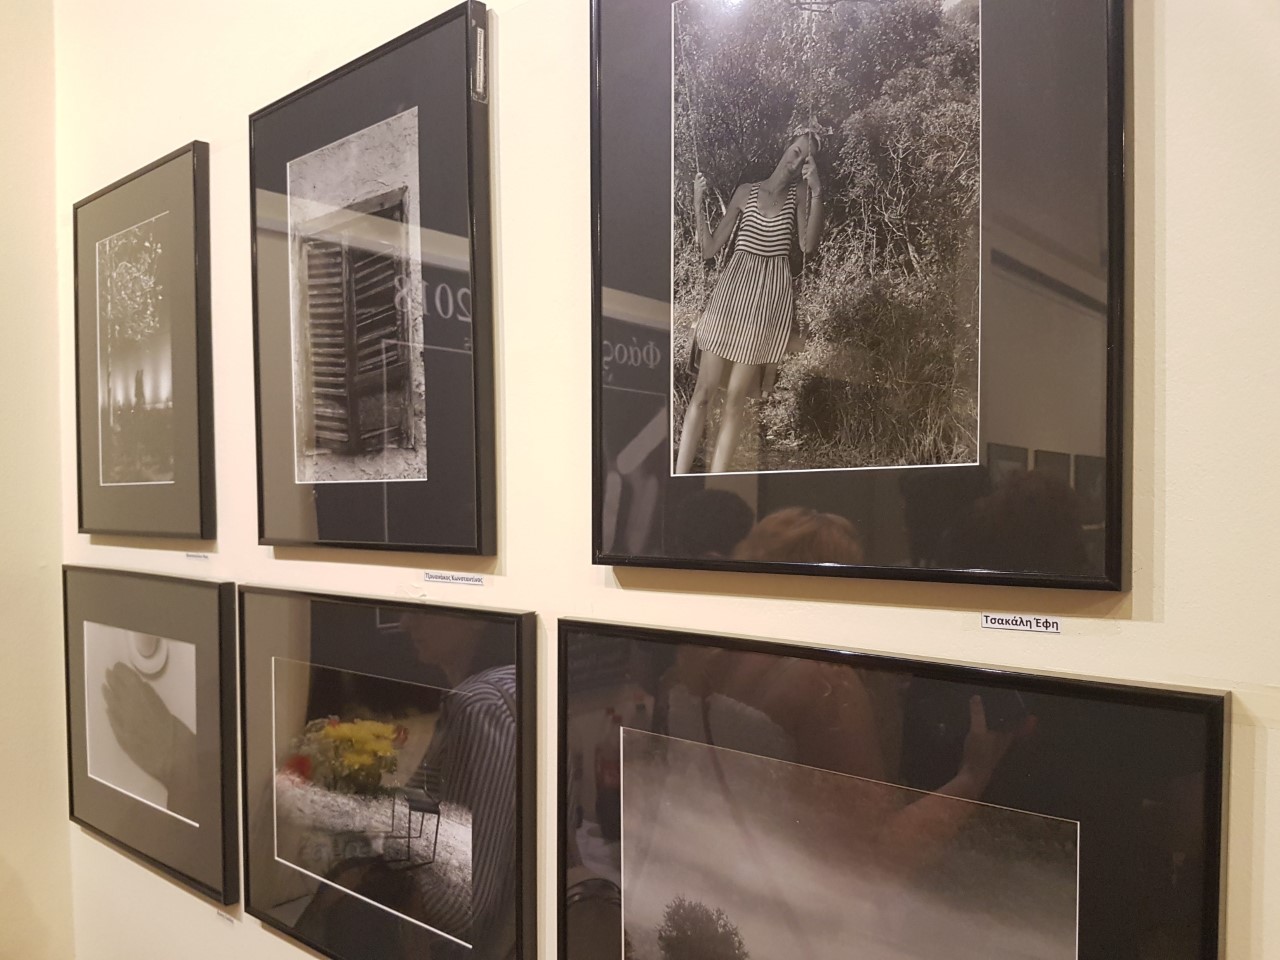 Δωρεάν μαθήματα αναλογικής φωτογραφίας για 33 χρονιά στον Δήμο Ηρακλείου Αττικής